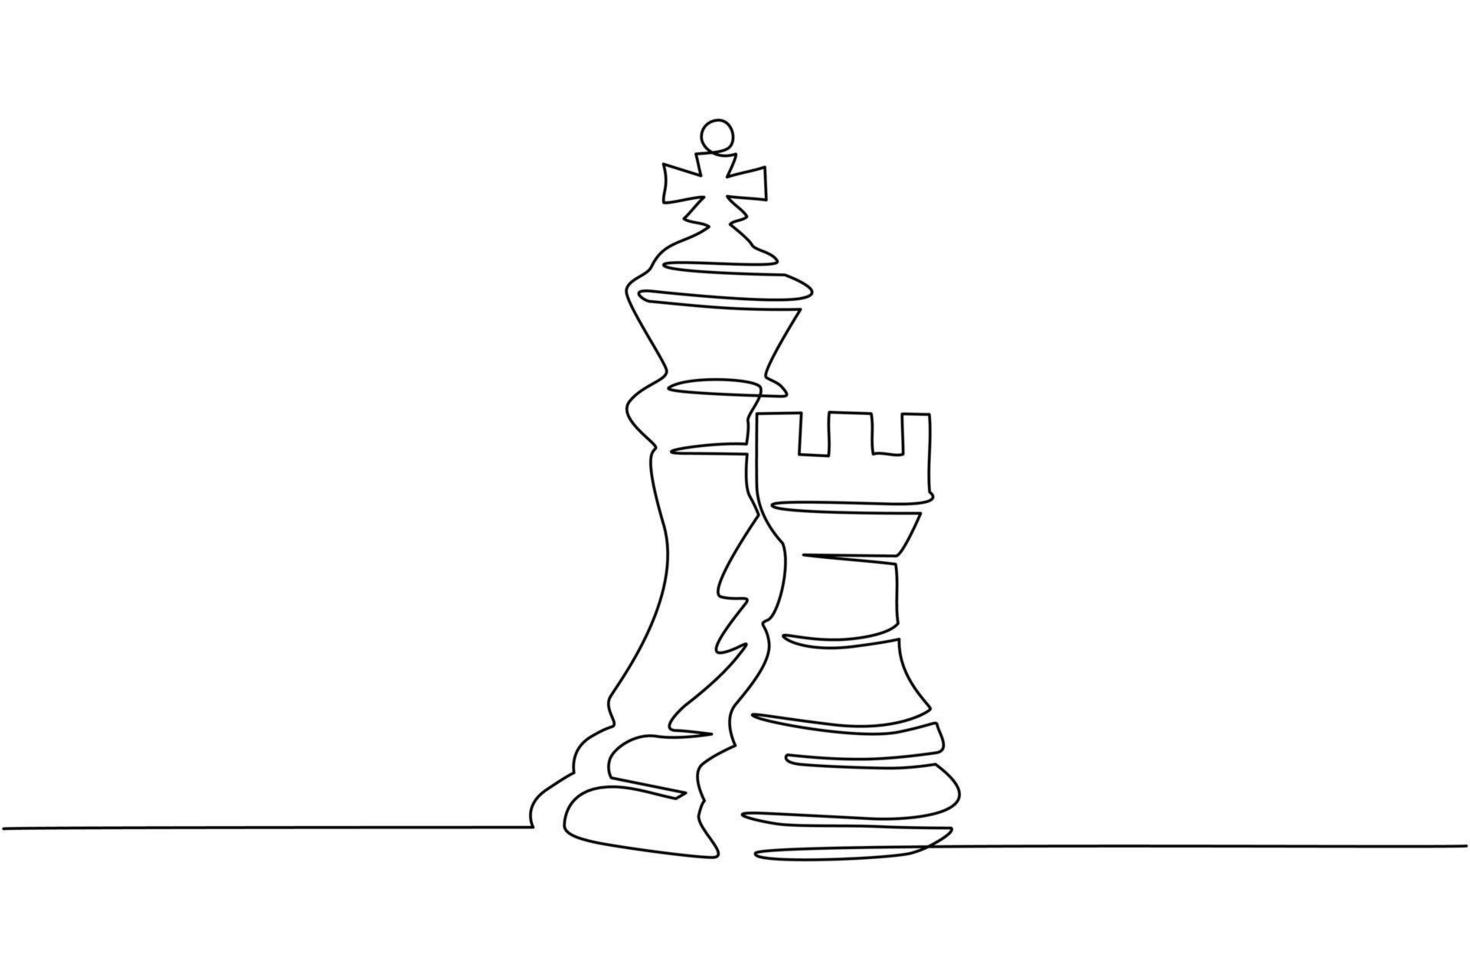 logo della torre e del re degli scacchi a una linea. set di emblemi e segni per il torneo sportivo di scacchi. sfida riuscita isolata. illustrazione vettoriale grafica moderna con disegno a linea continua